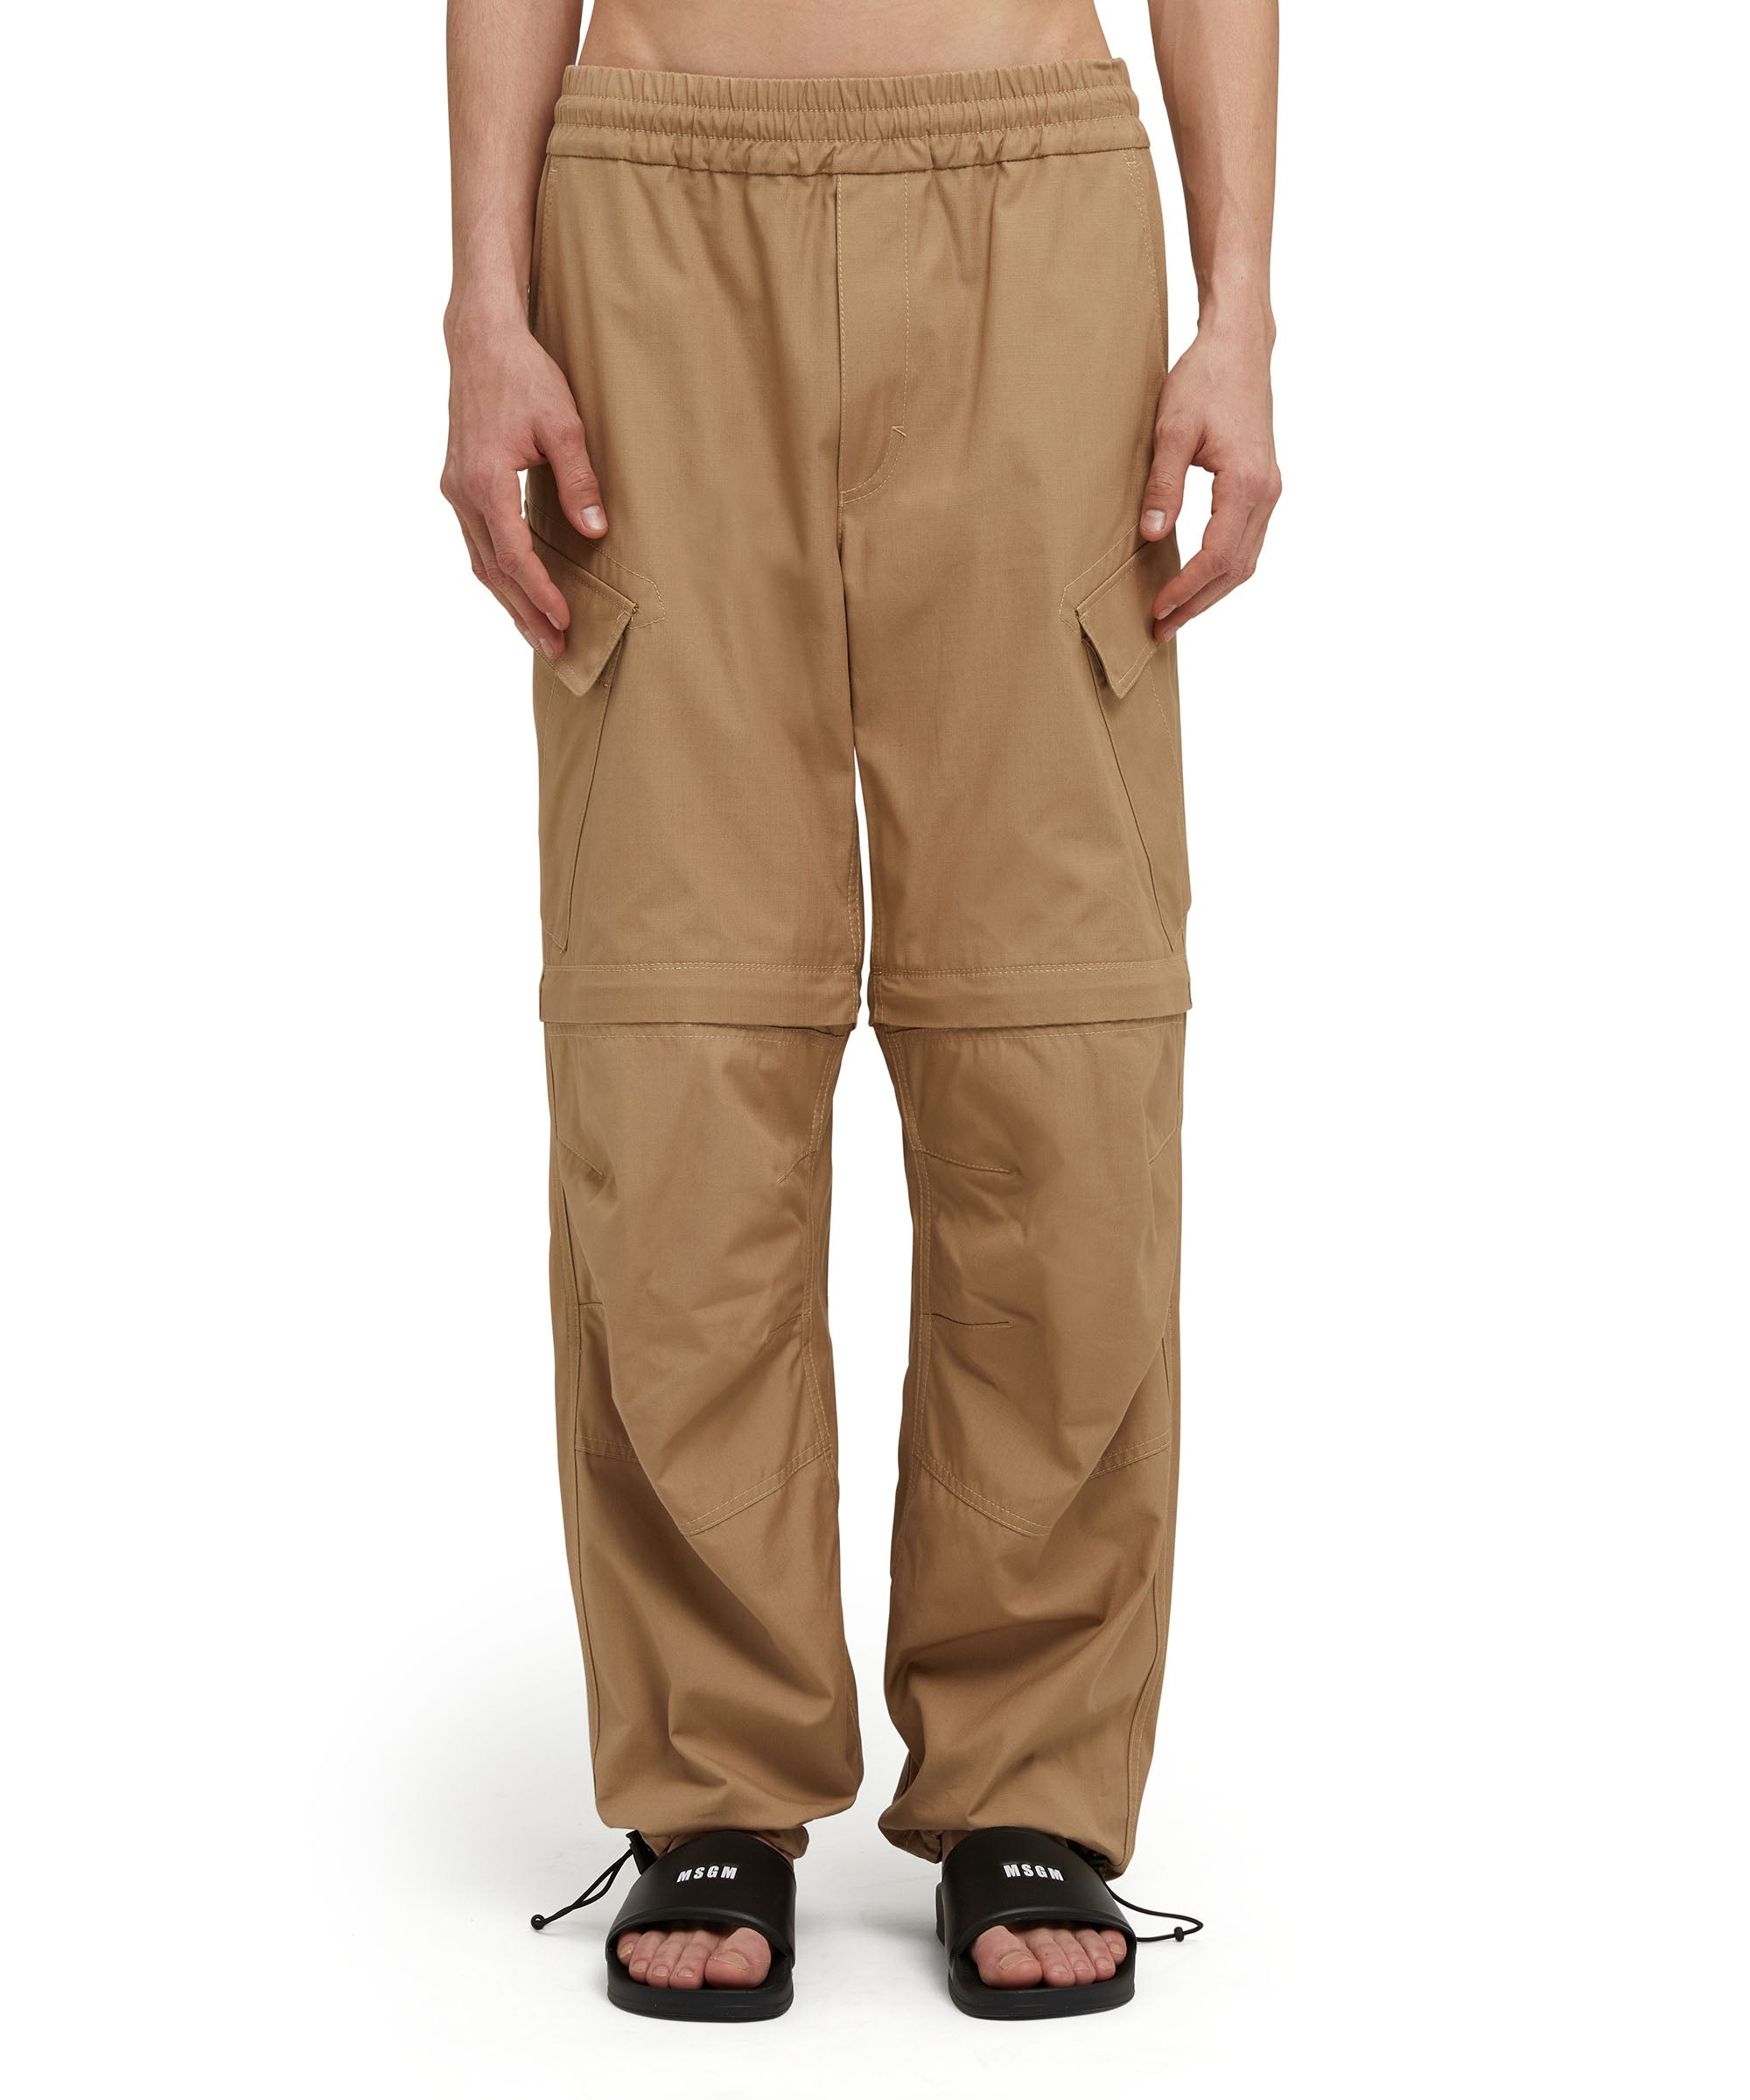 Solid color cotton cargo pants - 1